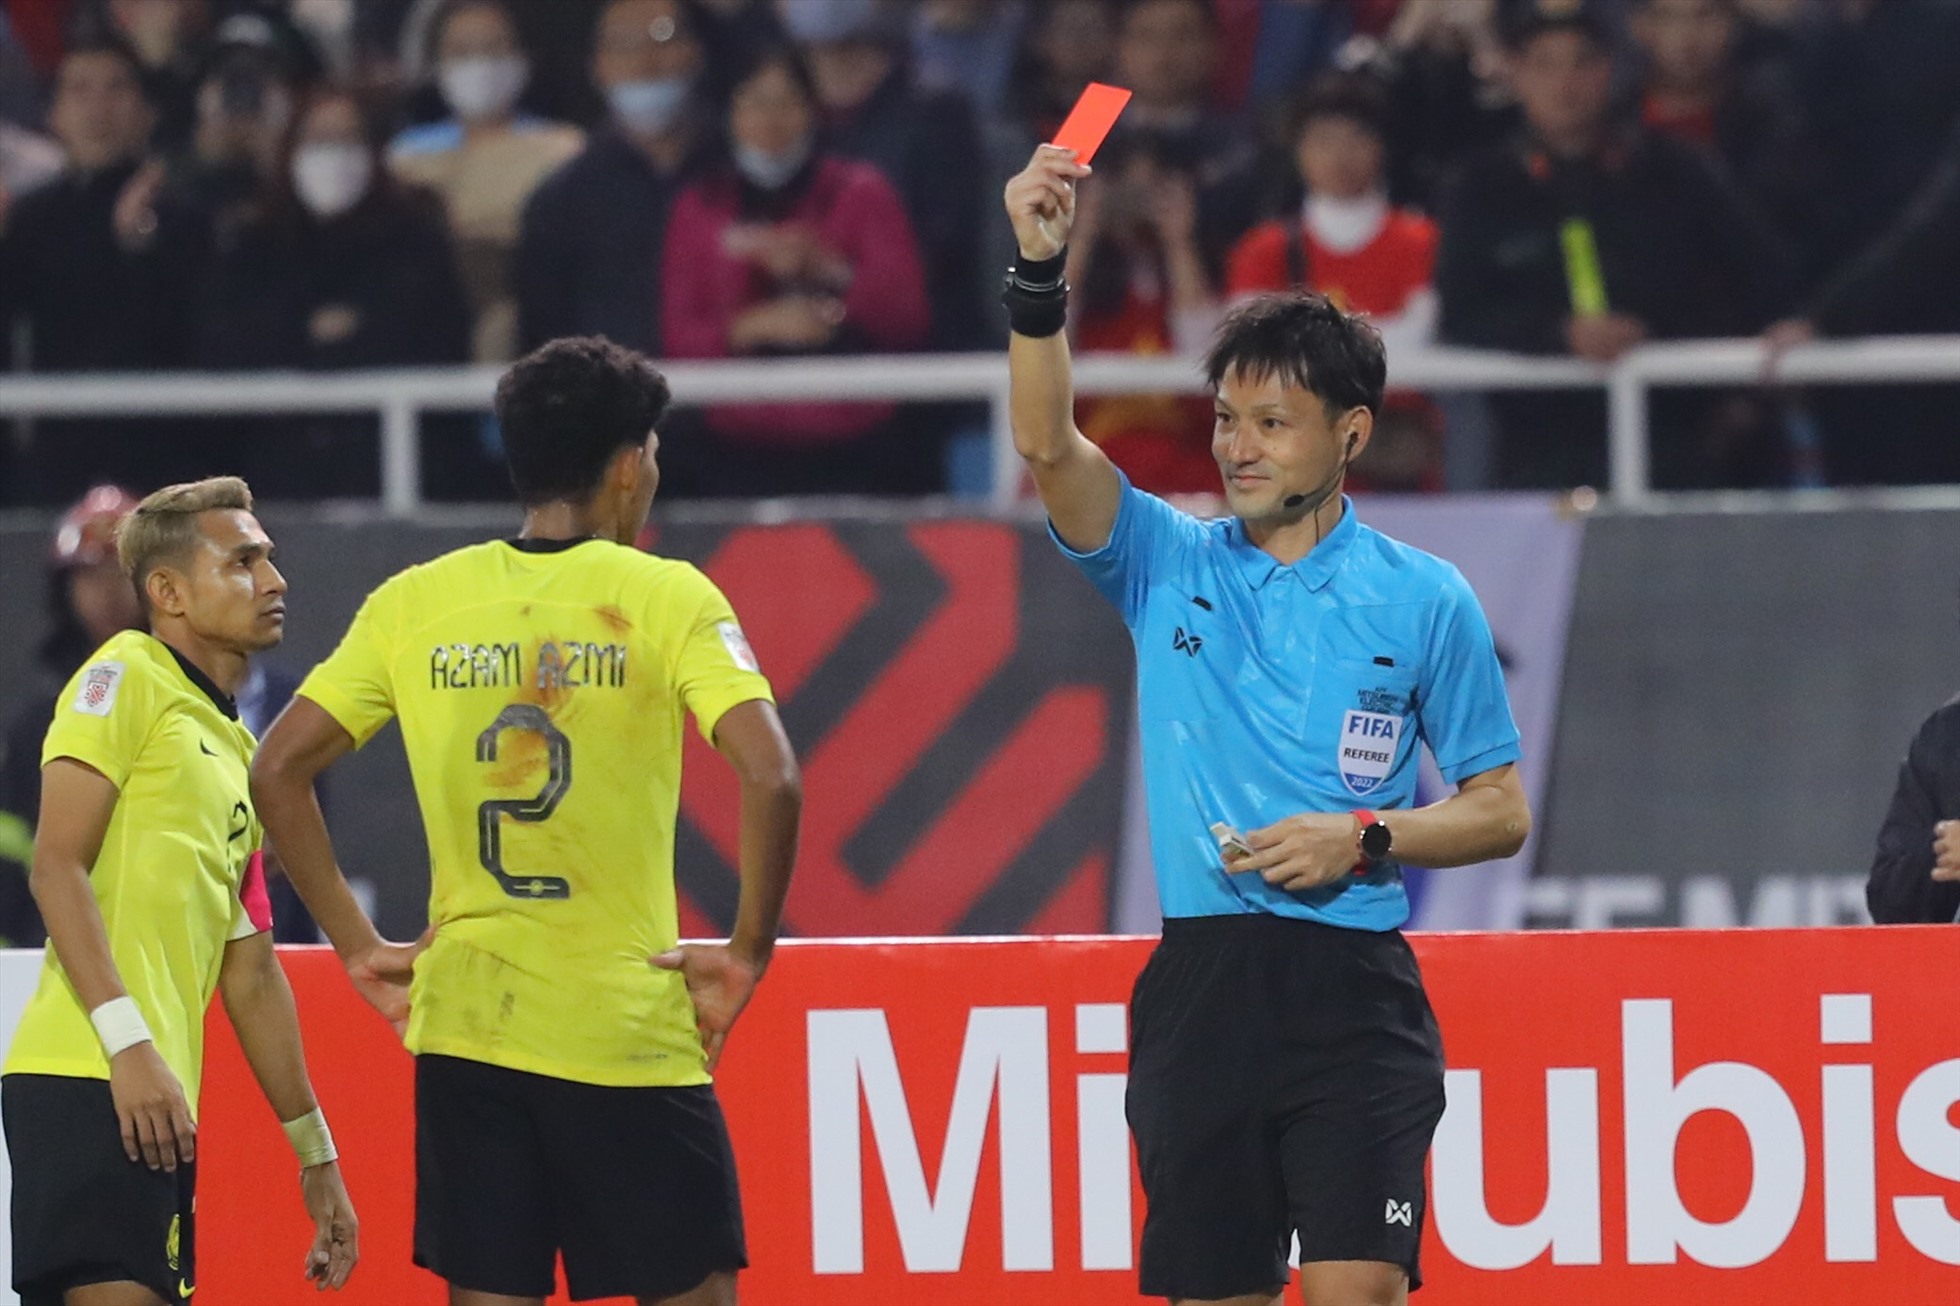 Phút 59, trọng tài chính người Nhật Bản bất ngờ cho đội tuyển Việt Nam được hưởng phạt đền, đồng thời rút thẻ đỏ trực tiếp cho cầu thủ Azmi bên phía Malaysia về lỗi đánh nguội đối với Văn Hậu.